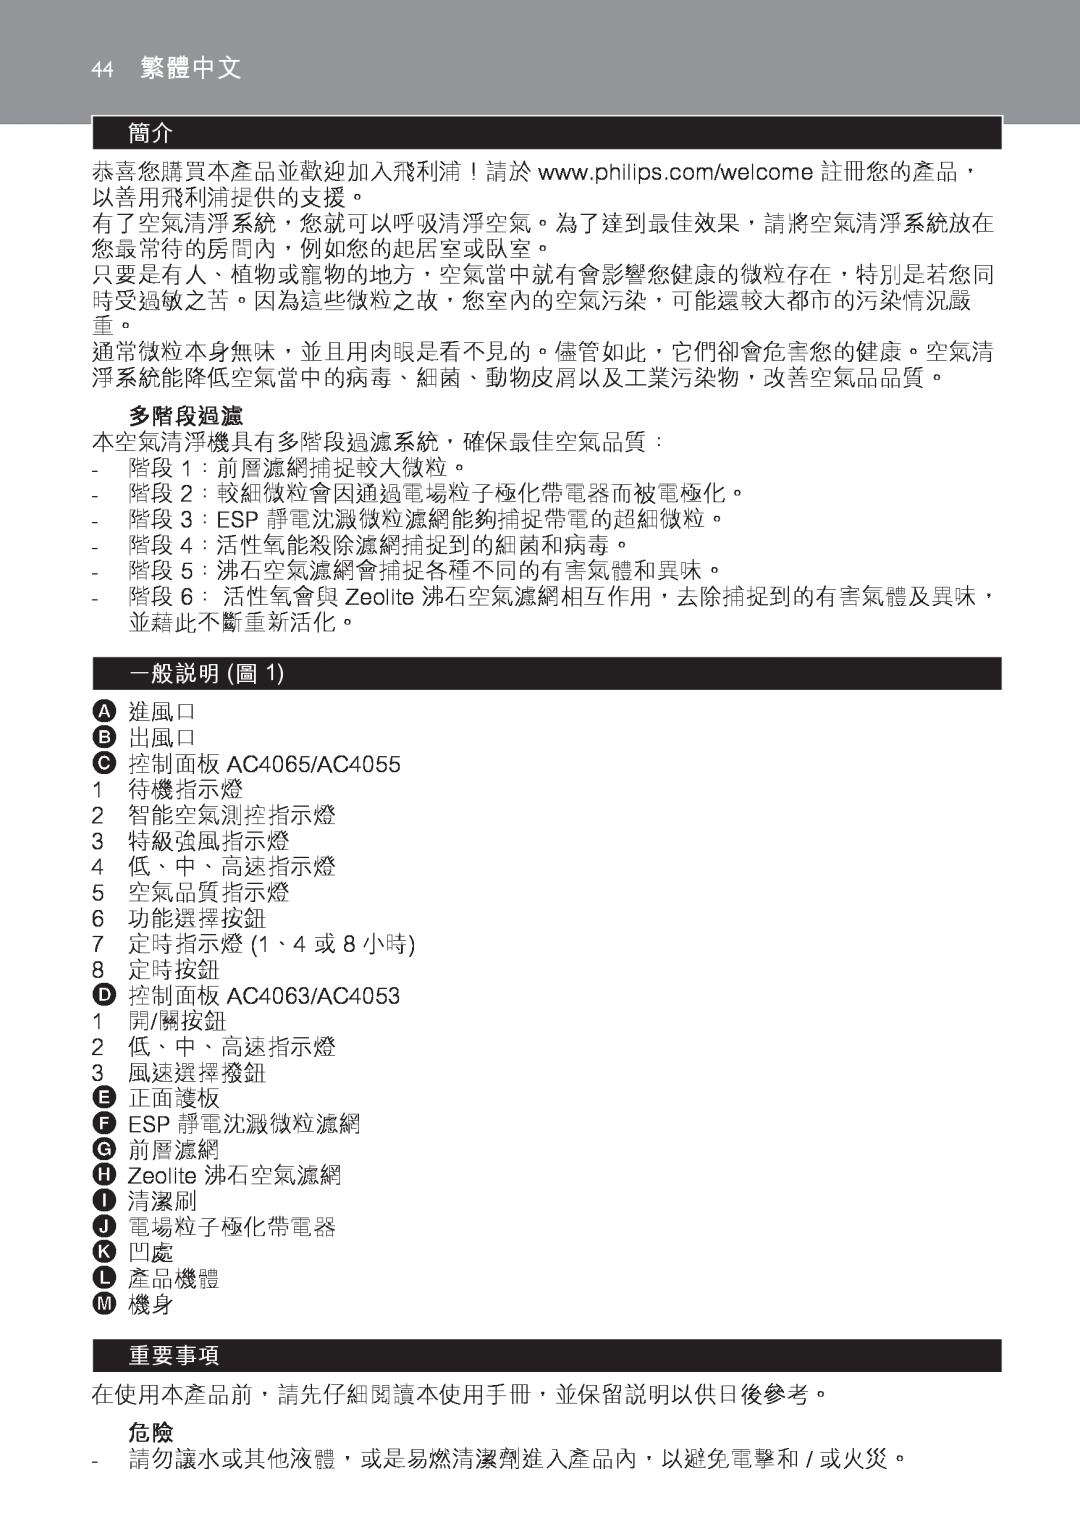 Philips AC4065, AC4055 manual 多階段過濾, 一般說明 圖, 重要事項, 44繁體中文 